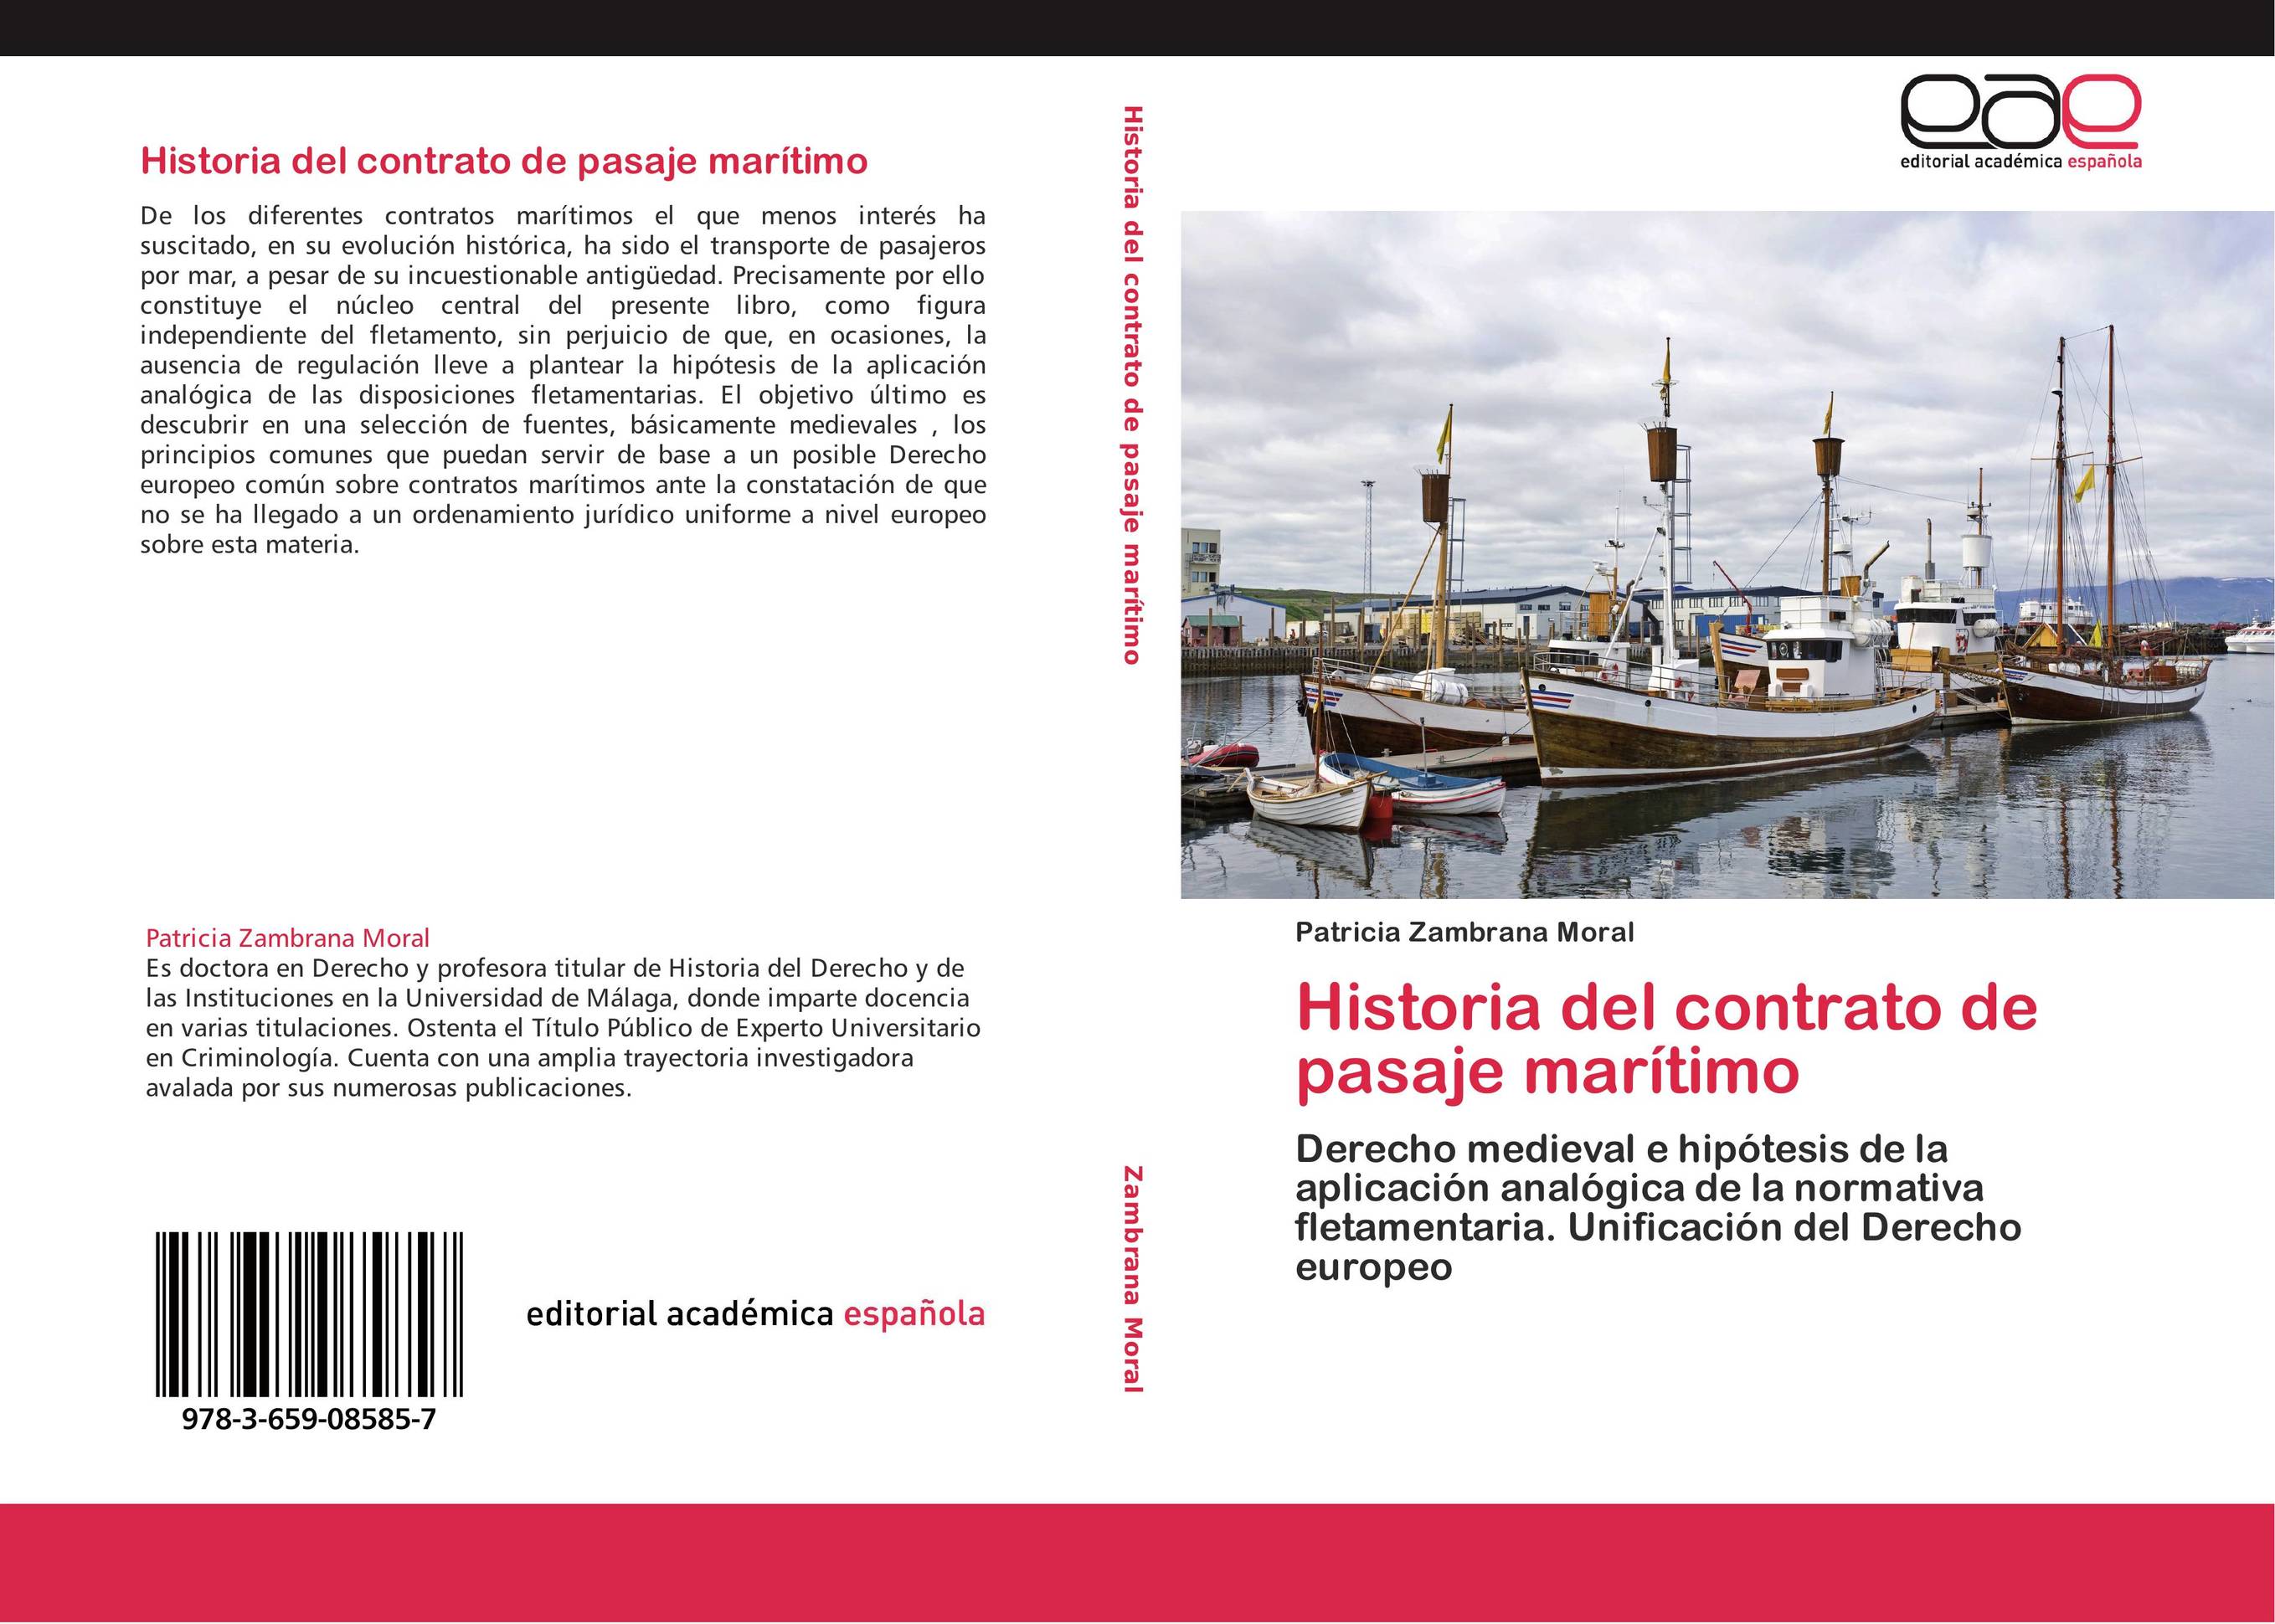 Historia del contrato de pasaje marítimo